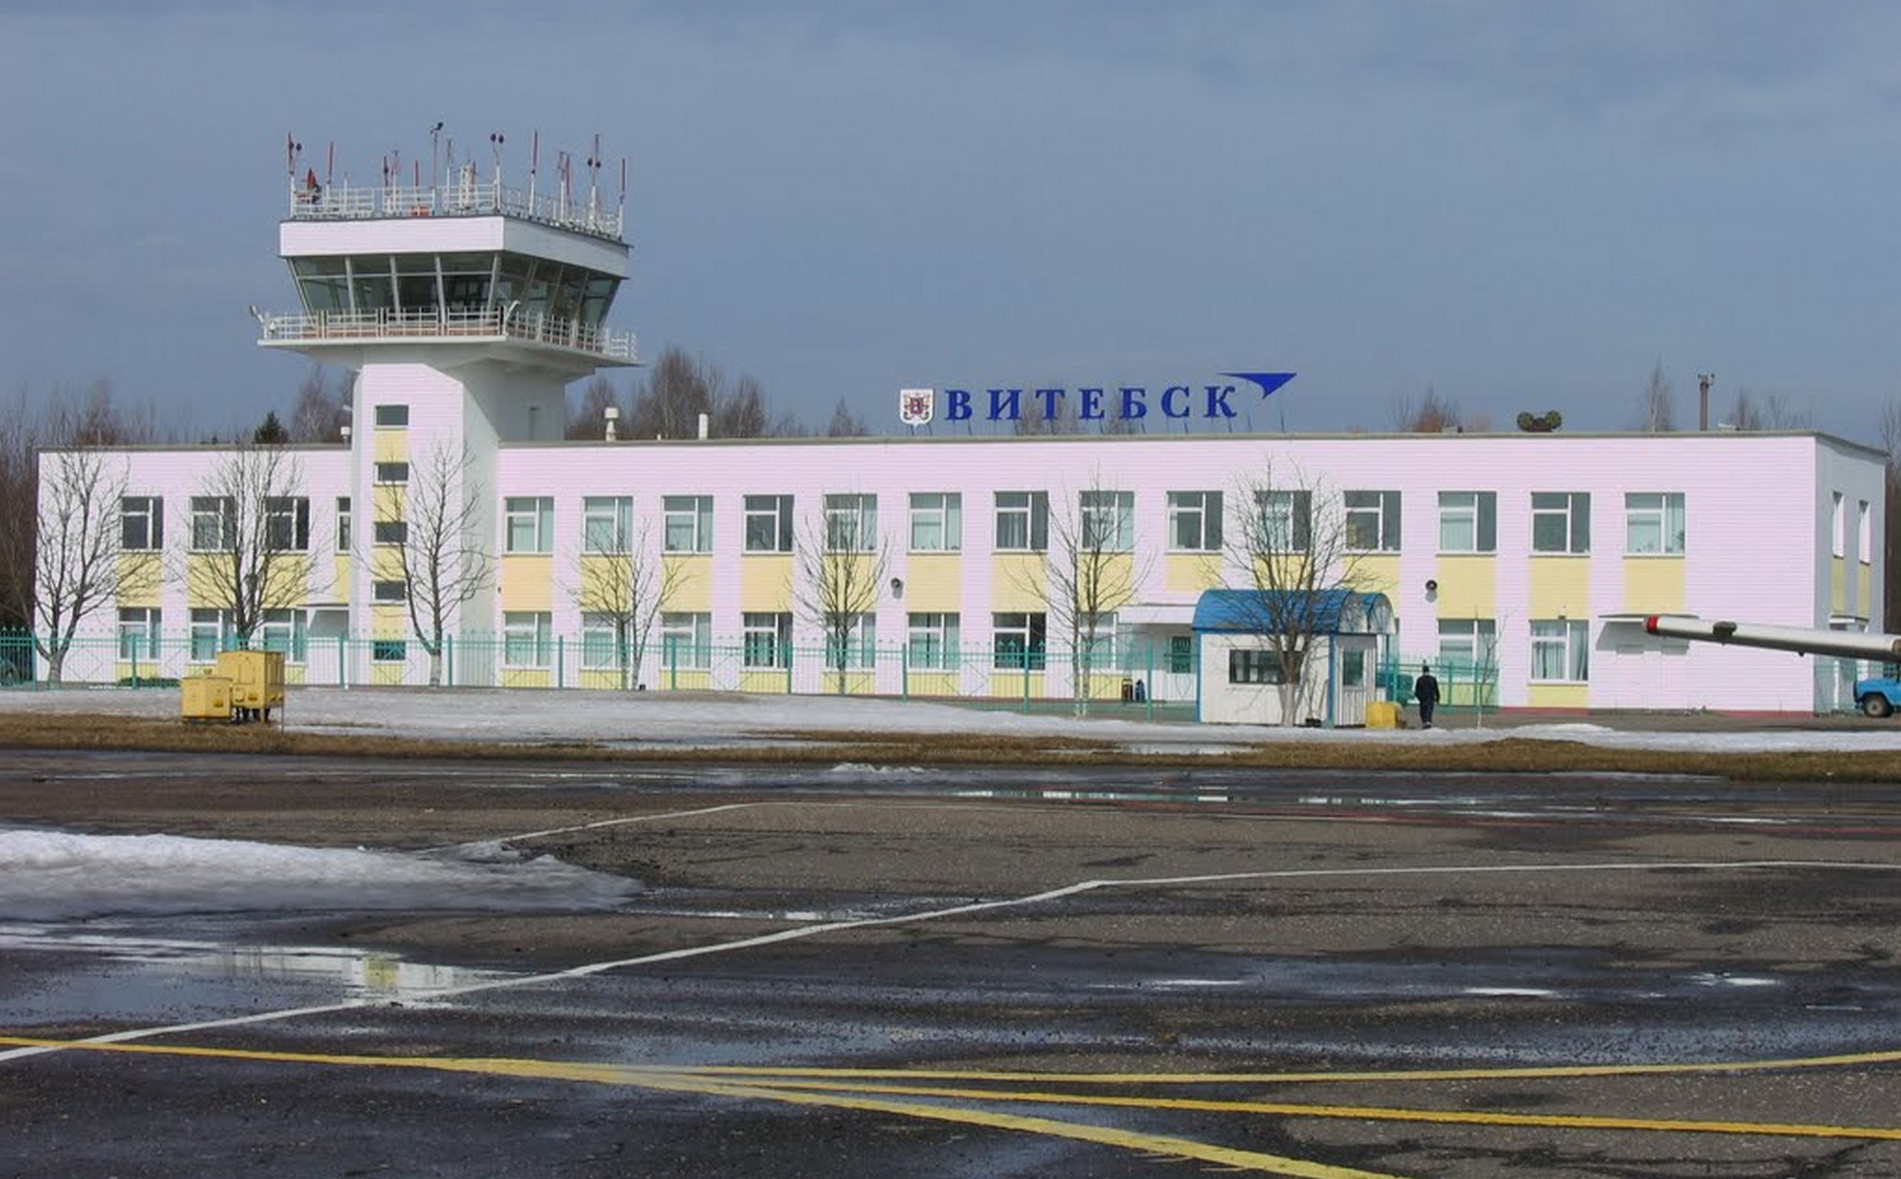 Аэропорт витебска — как добраться, онлайн-табло, отзывы